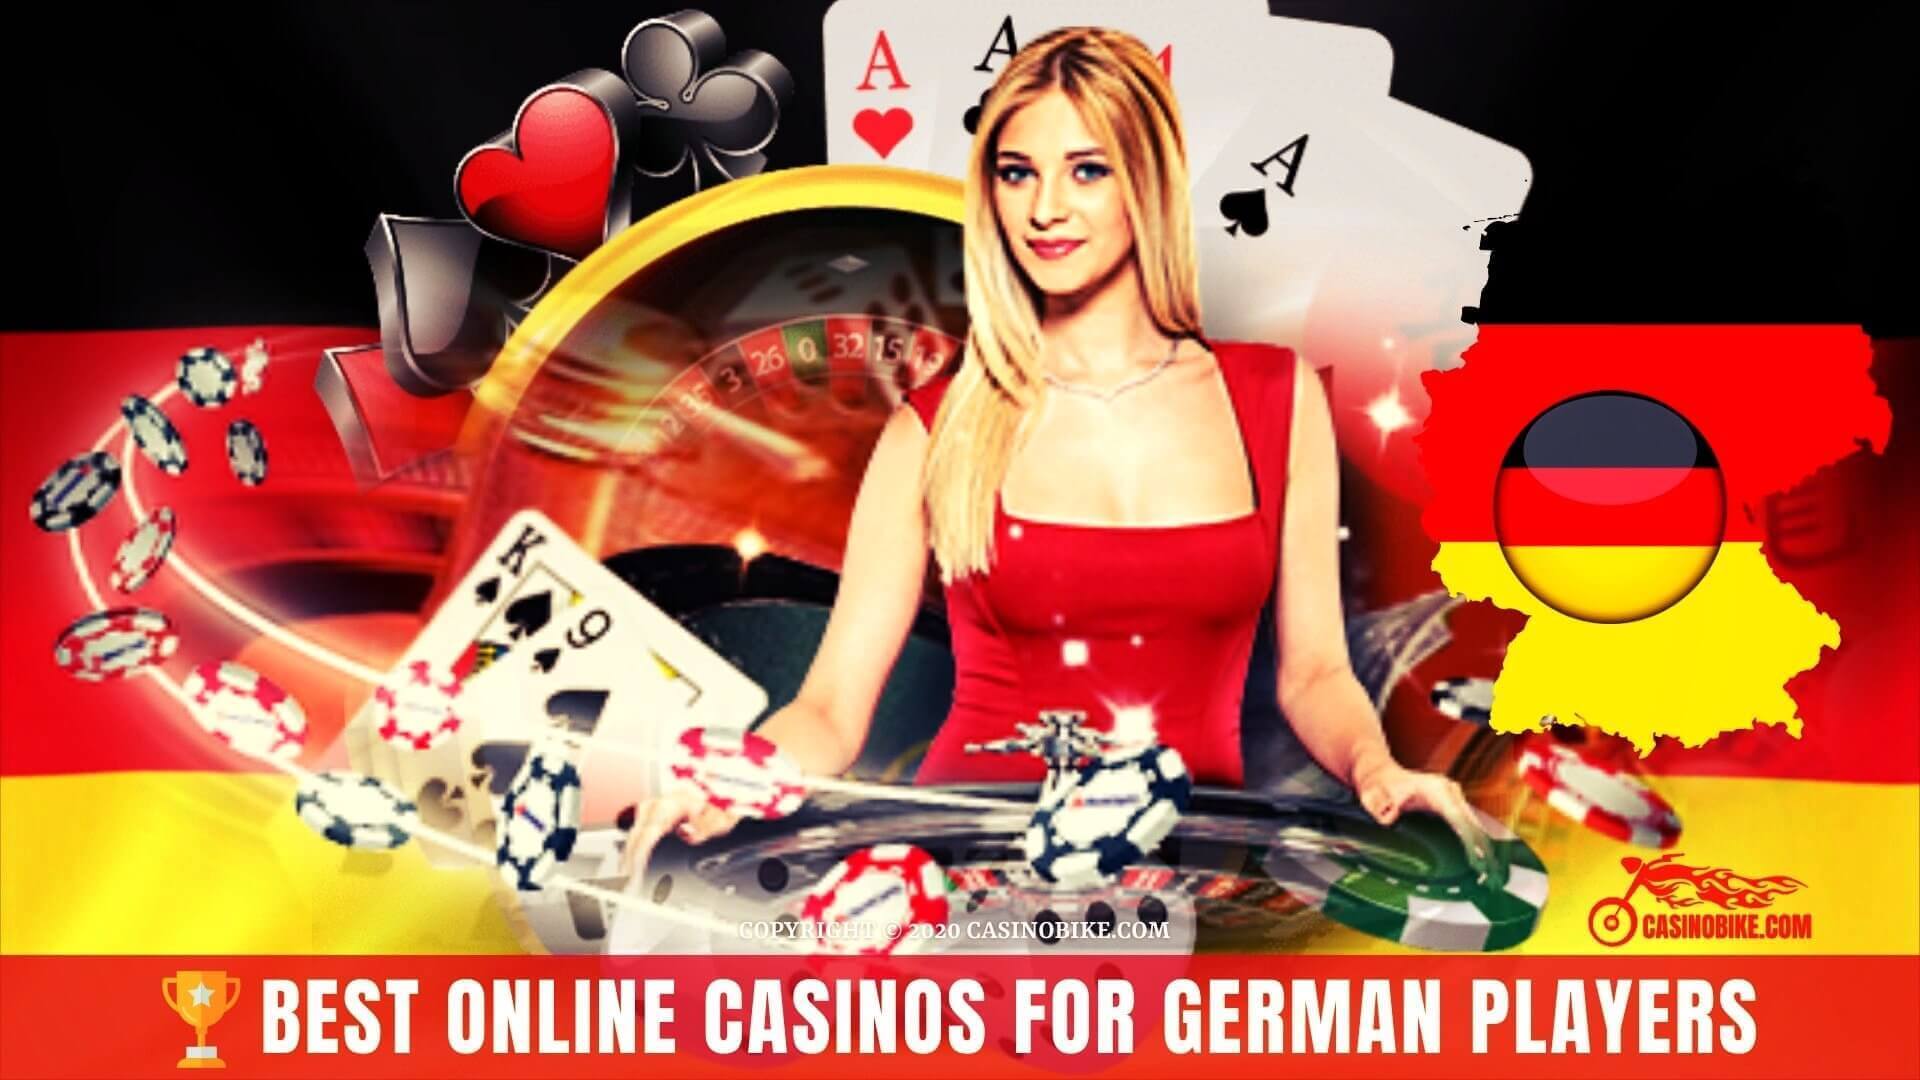 9 Wege, wie Casino-Spiele Sie unbesiegbar machen kann